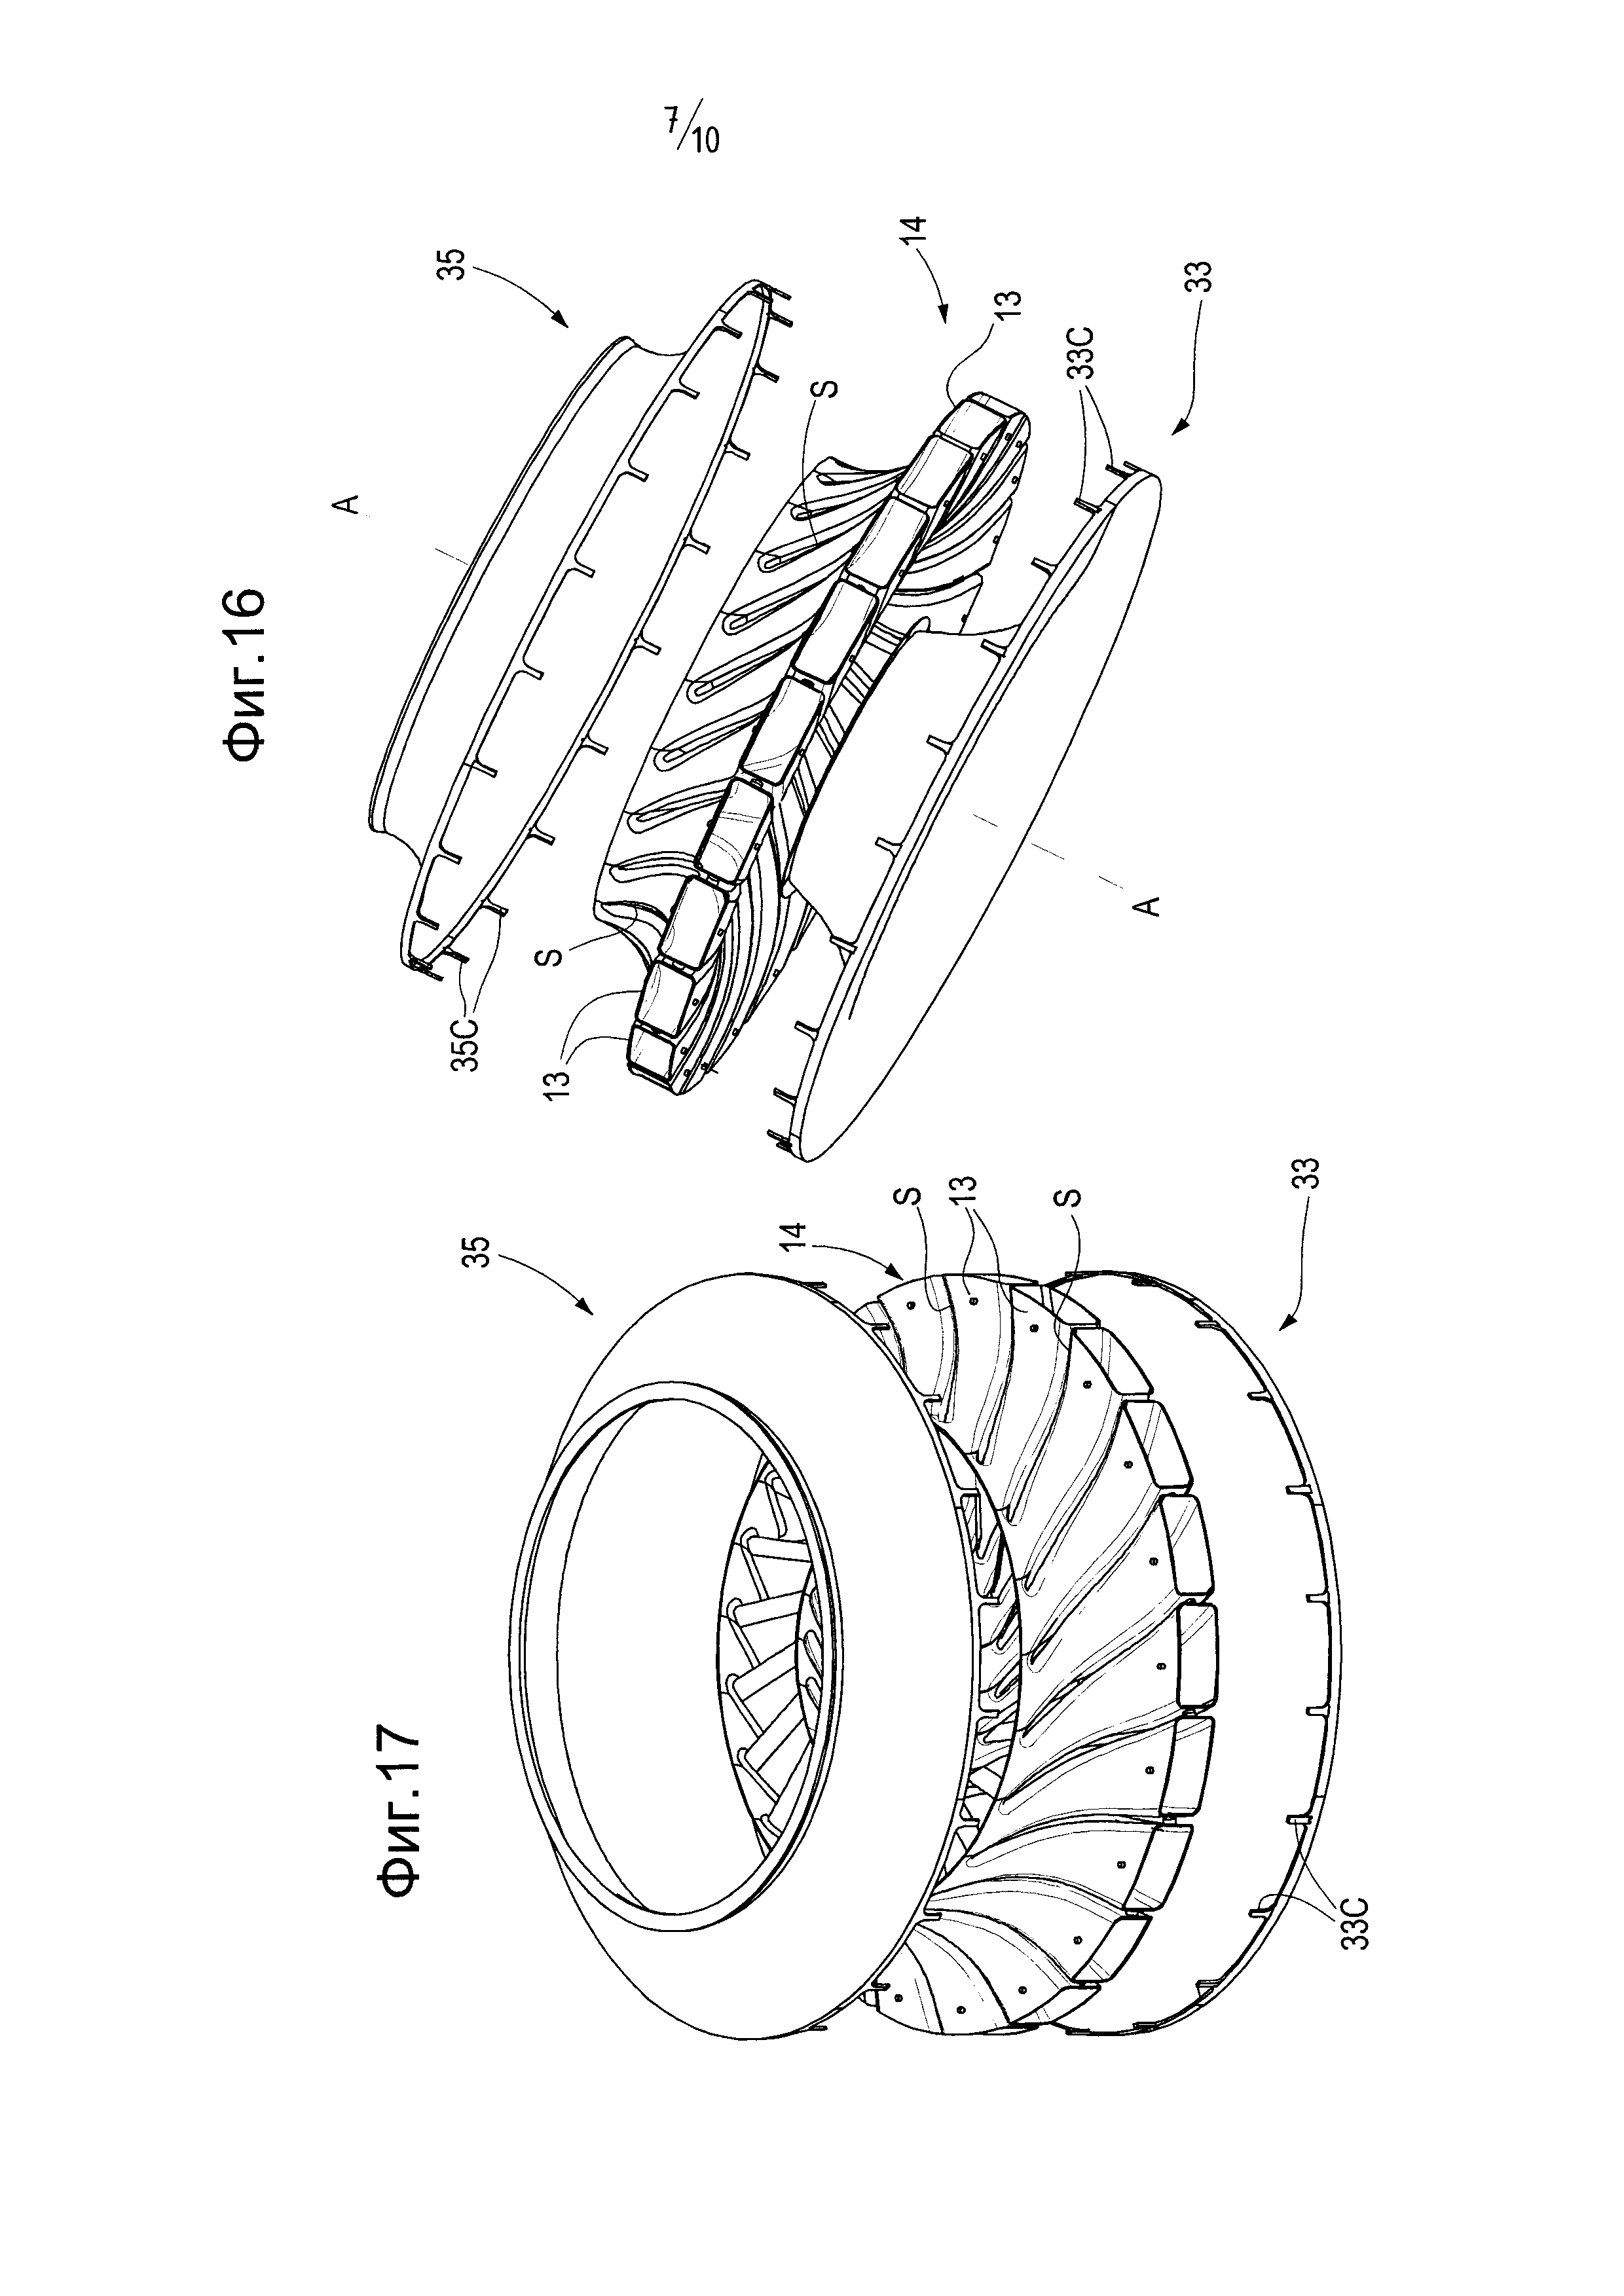 Изготовление рабочего колеса турбомашины путем сборки трубчатых компонентов